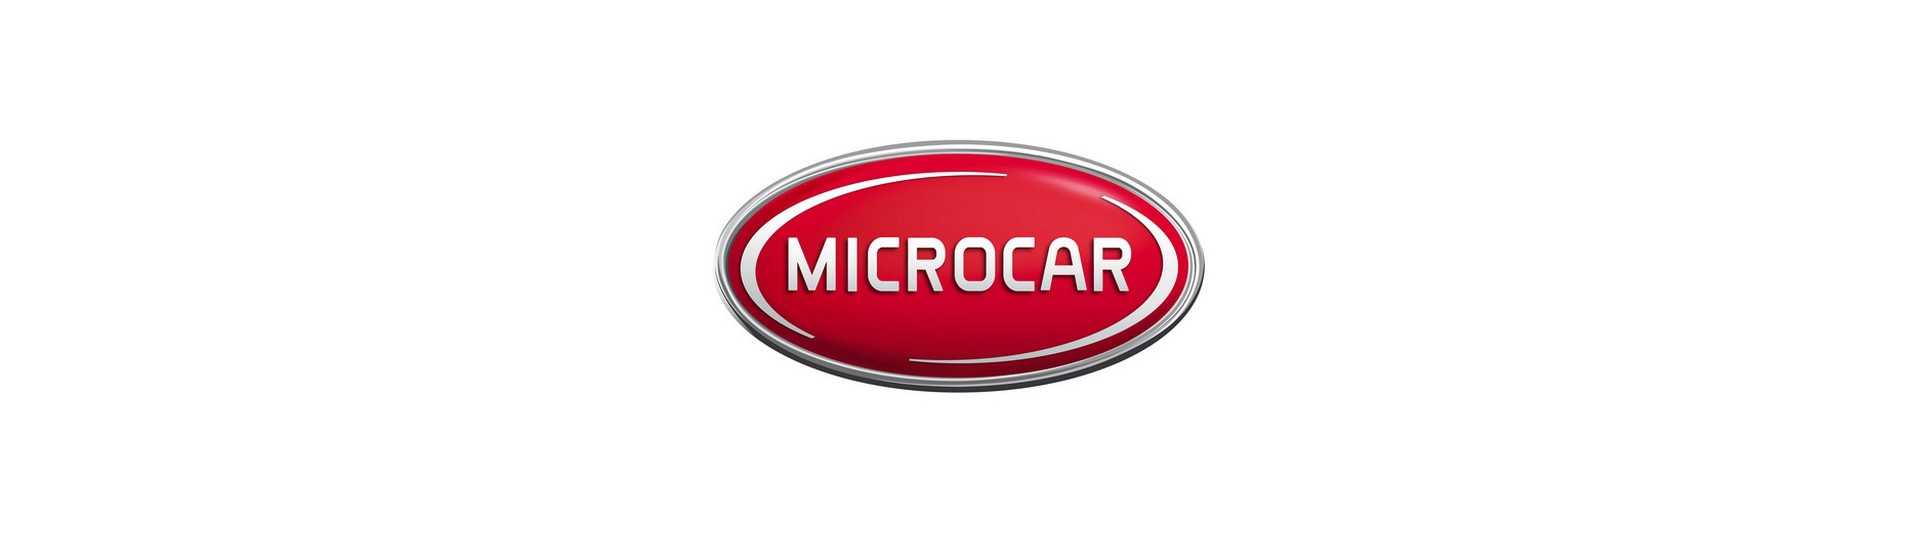 Cel mai bun preț pentru o mașină fără permis Microcar